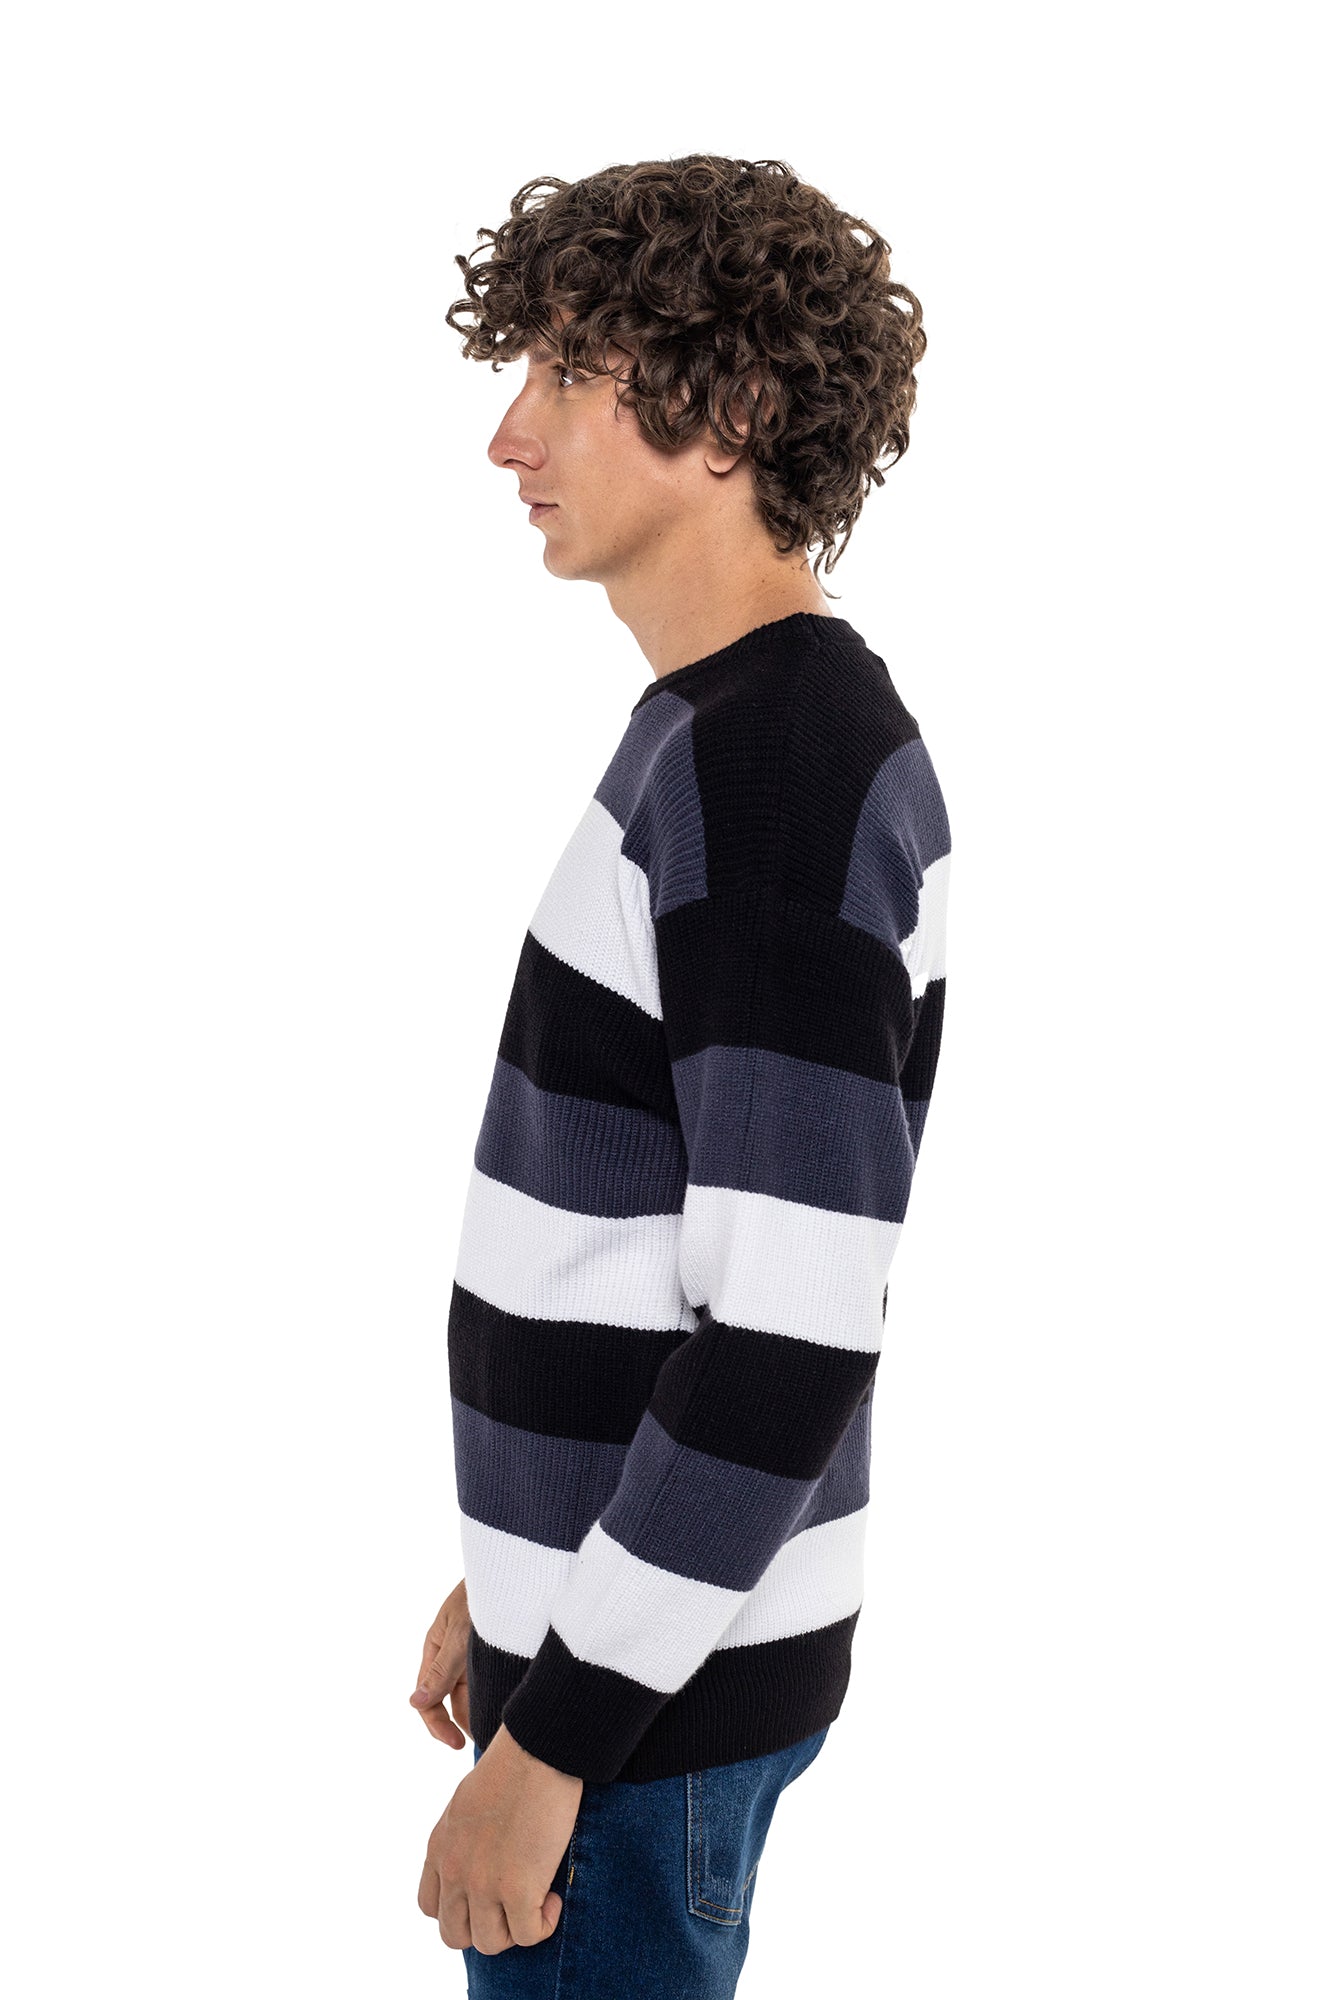 Sweater Cuello Alto Para hombre – Dreamer Jeans